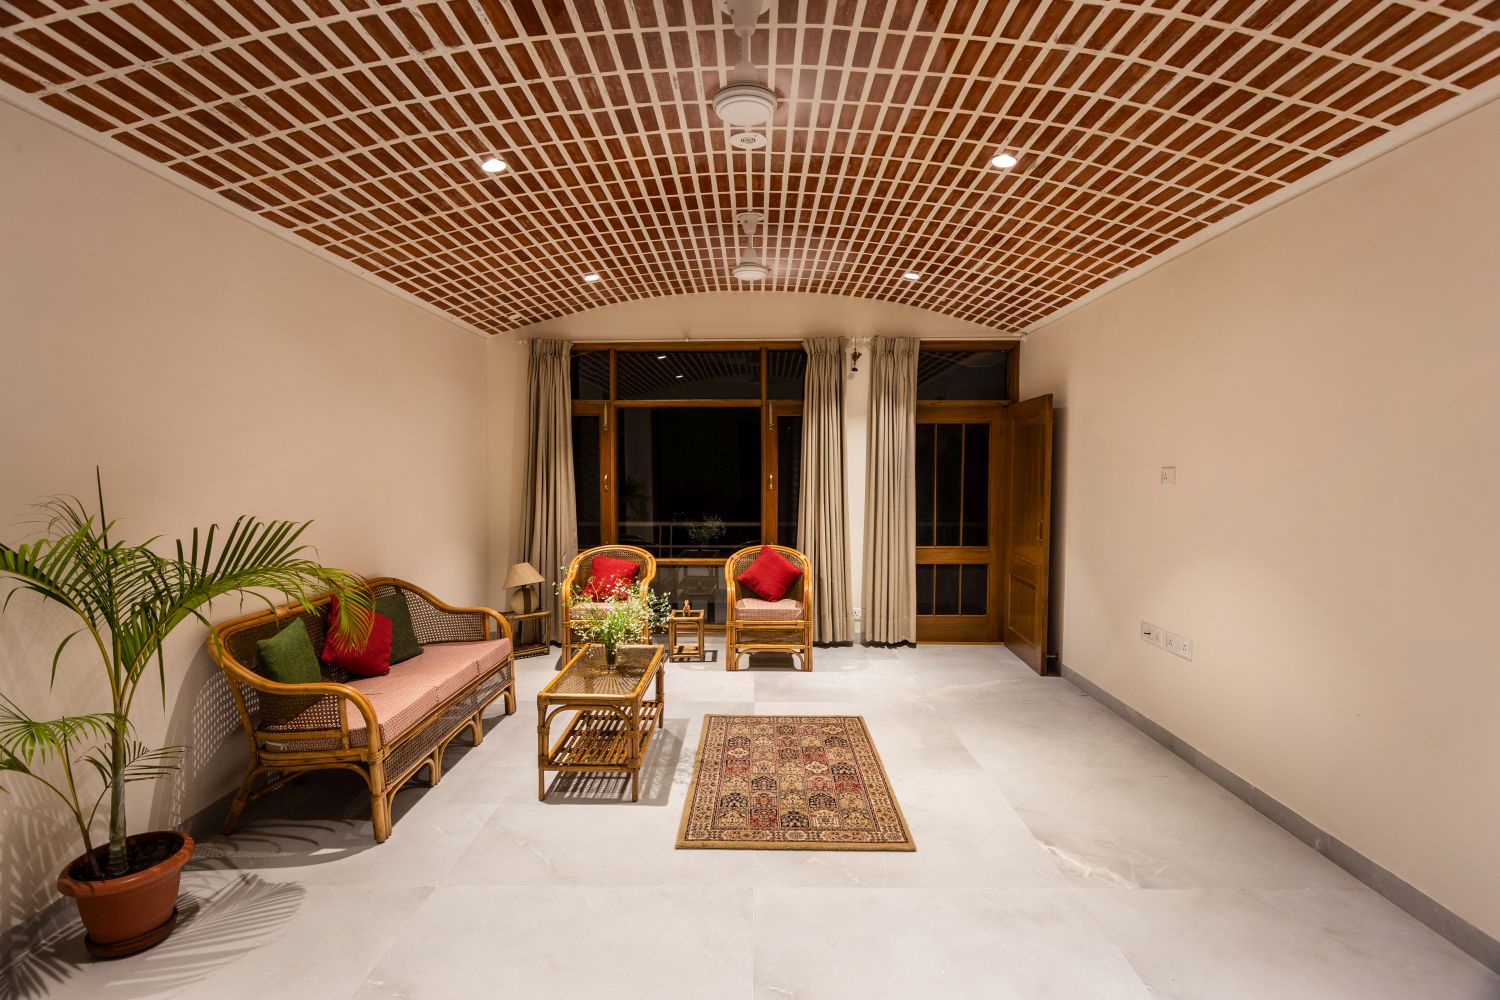 Residence 2105, Chandigarh, by Studio Mohenjodaro 6